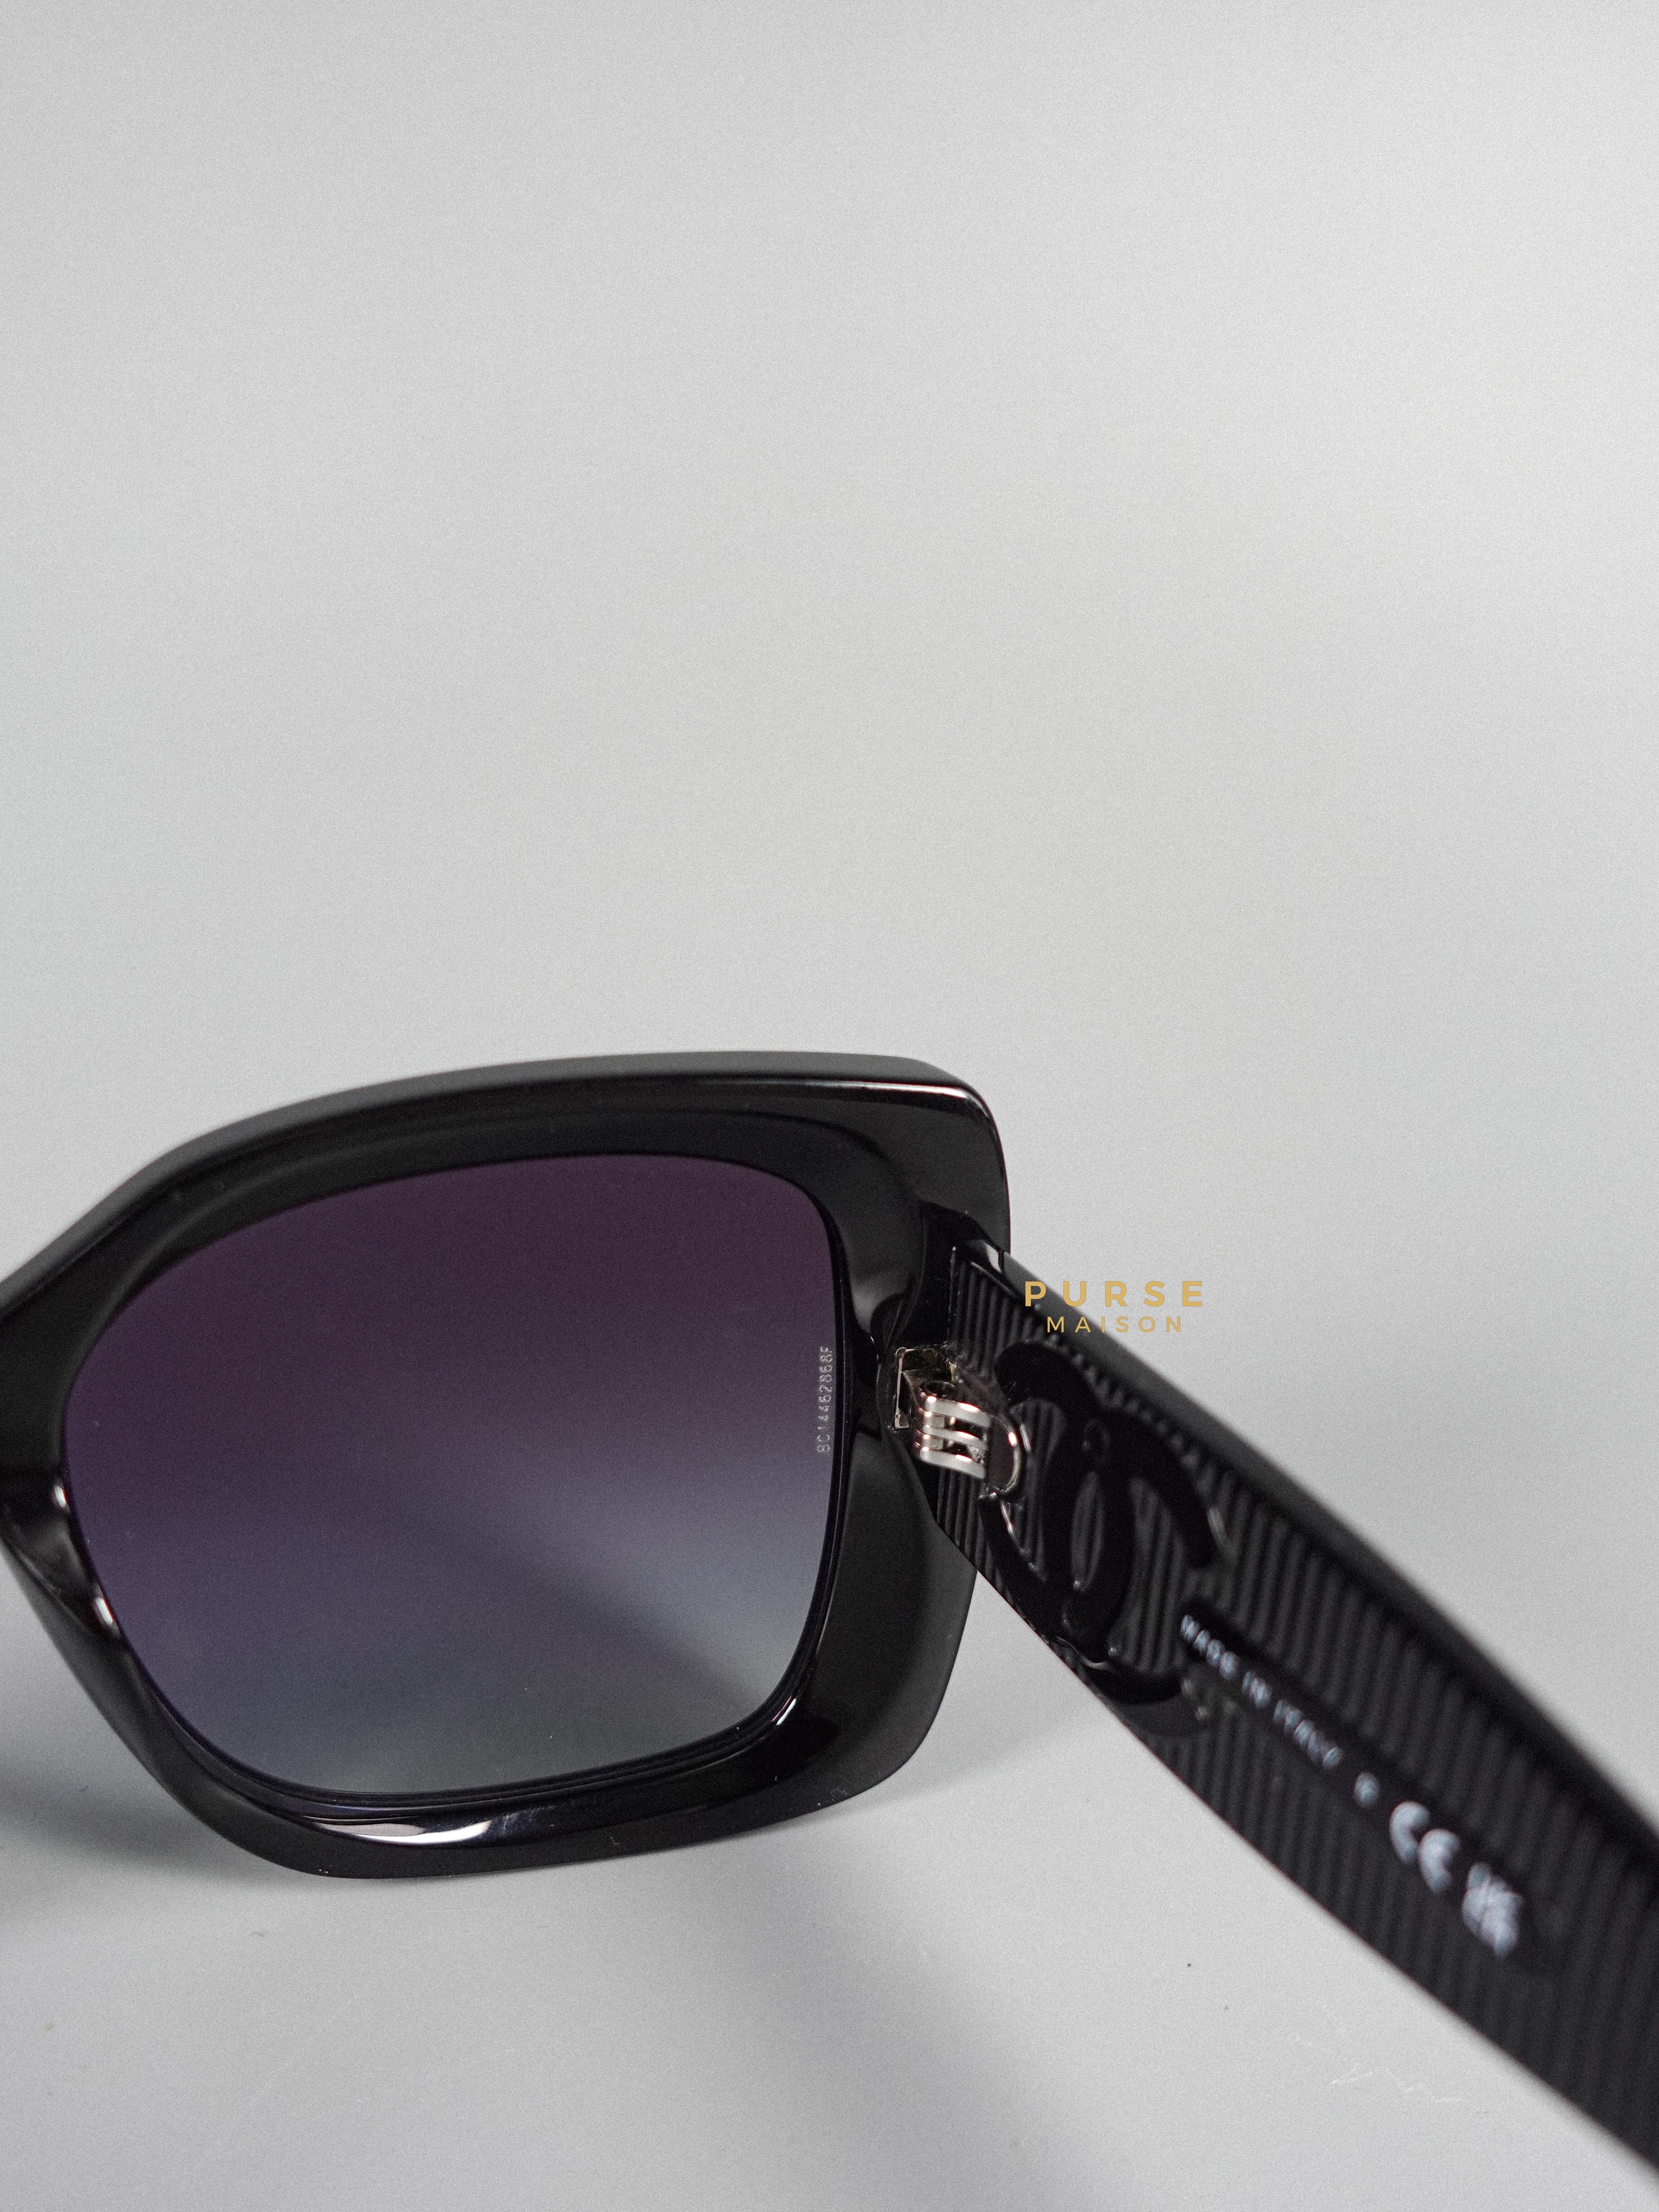 Chanel CC Square Sunglasses | Purse Maison Luxury Bags Shop